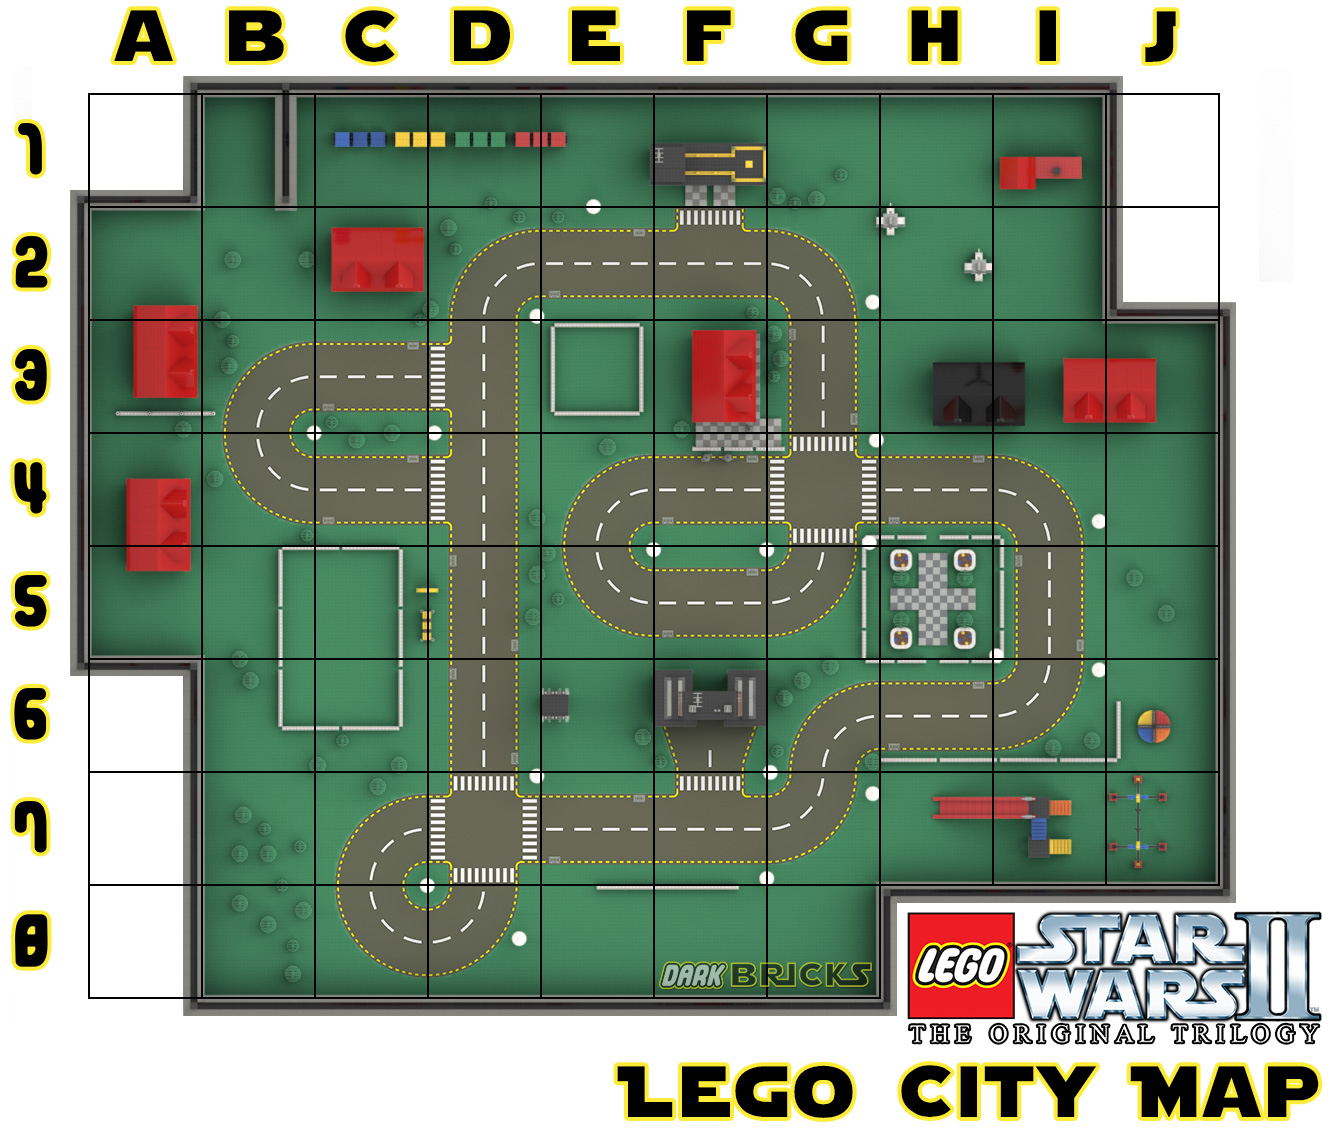 darkBricks LEGO Star Wars - II - The Original Trilogy - Walkthrough - LEGO City